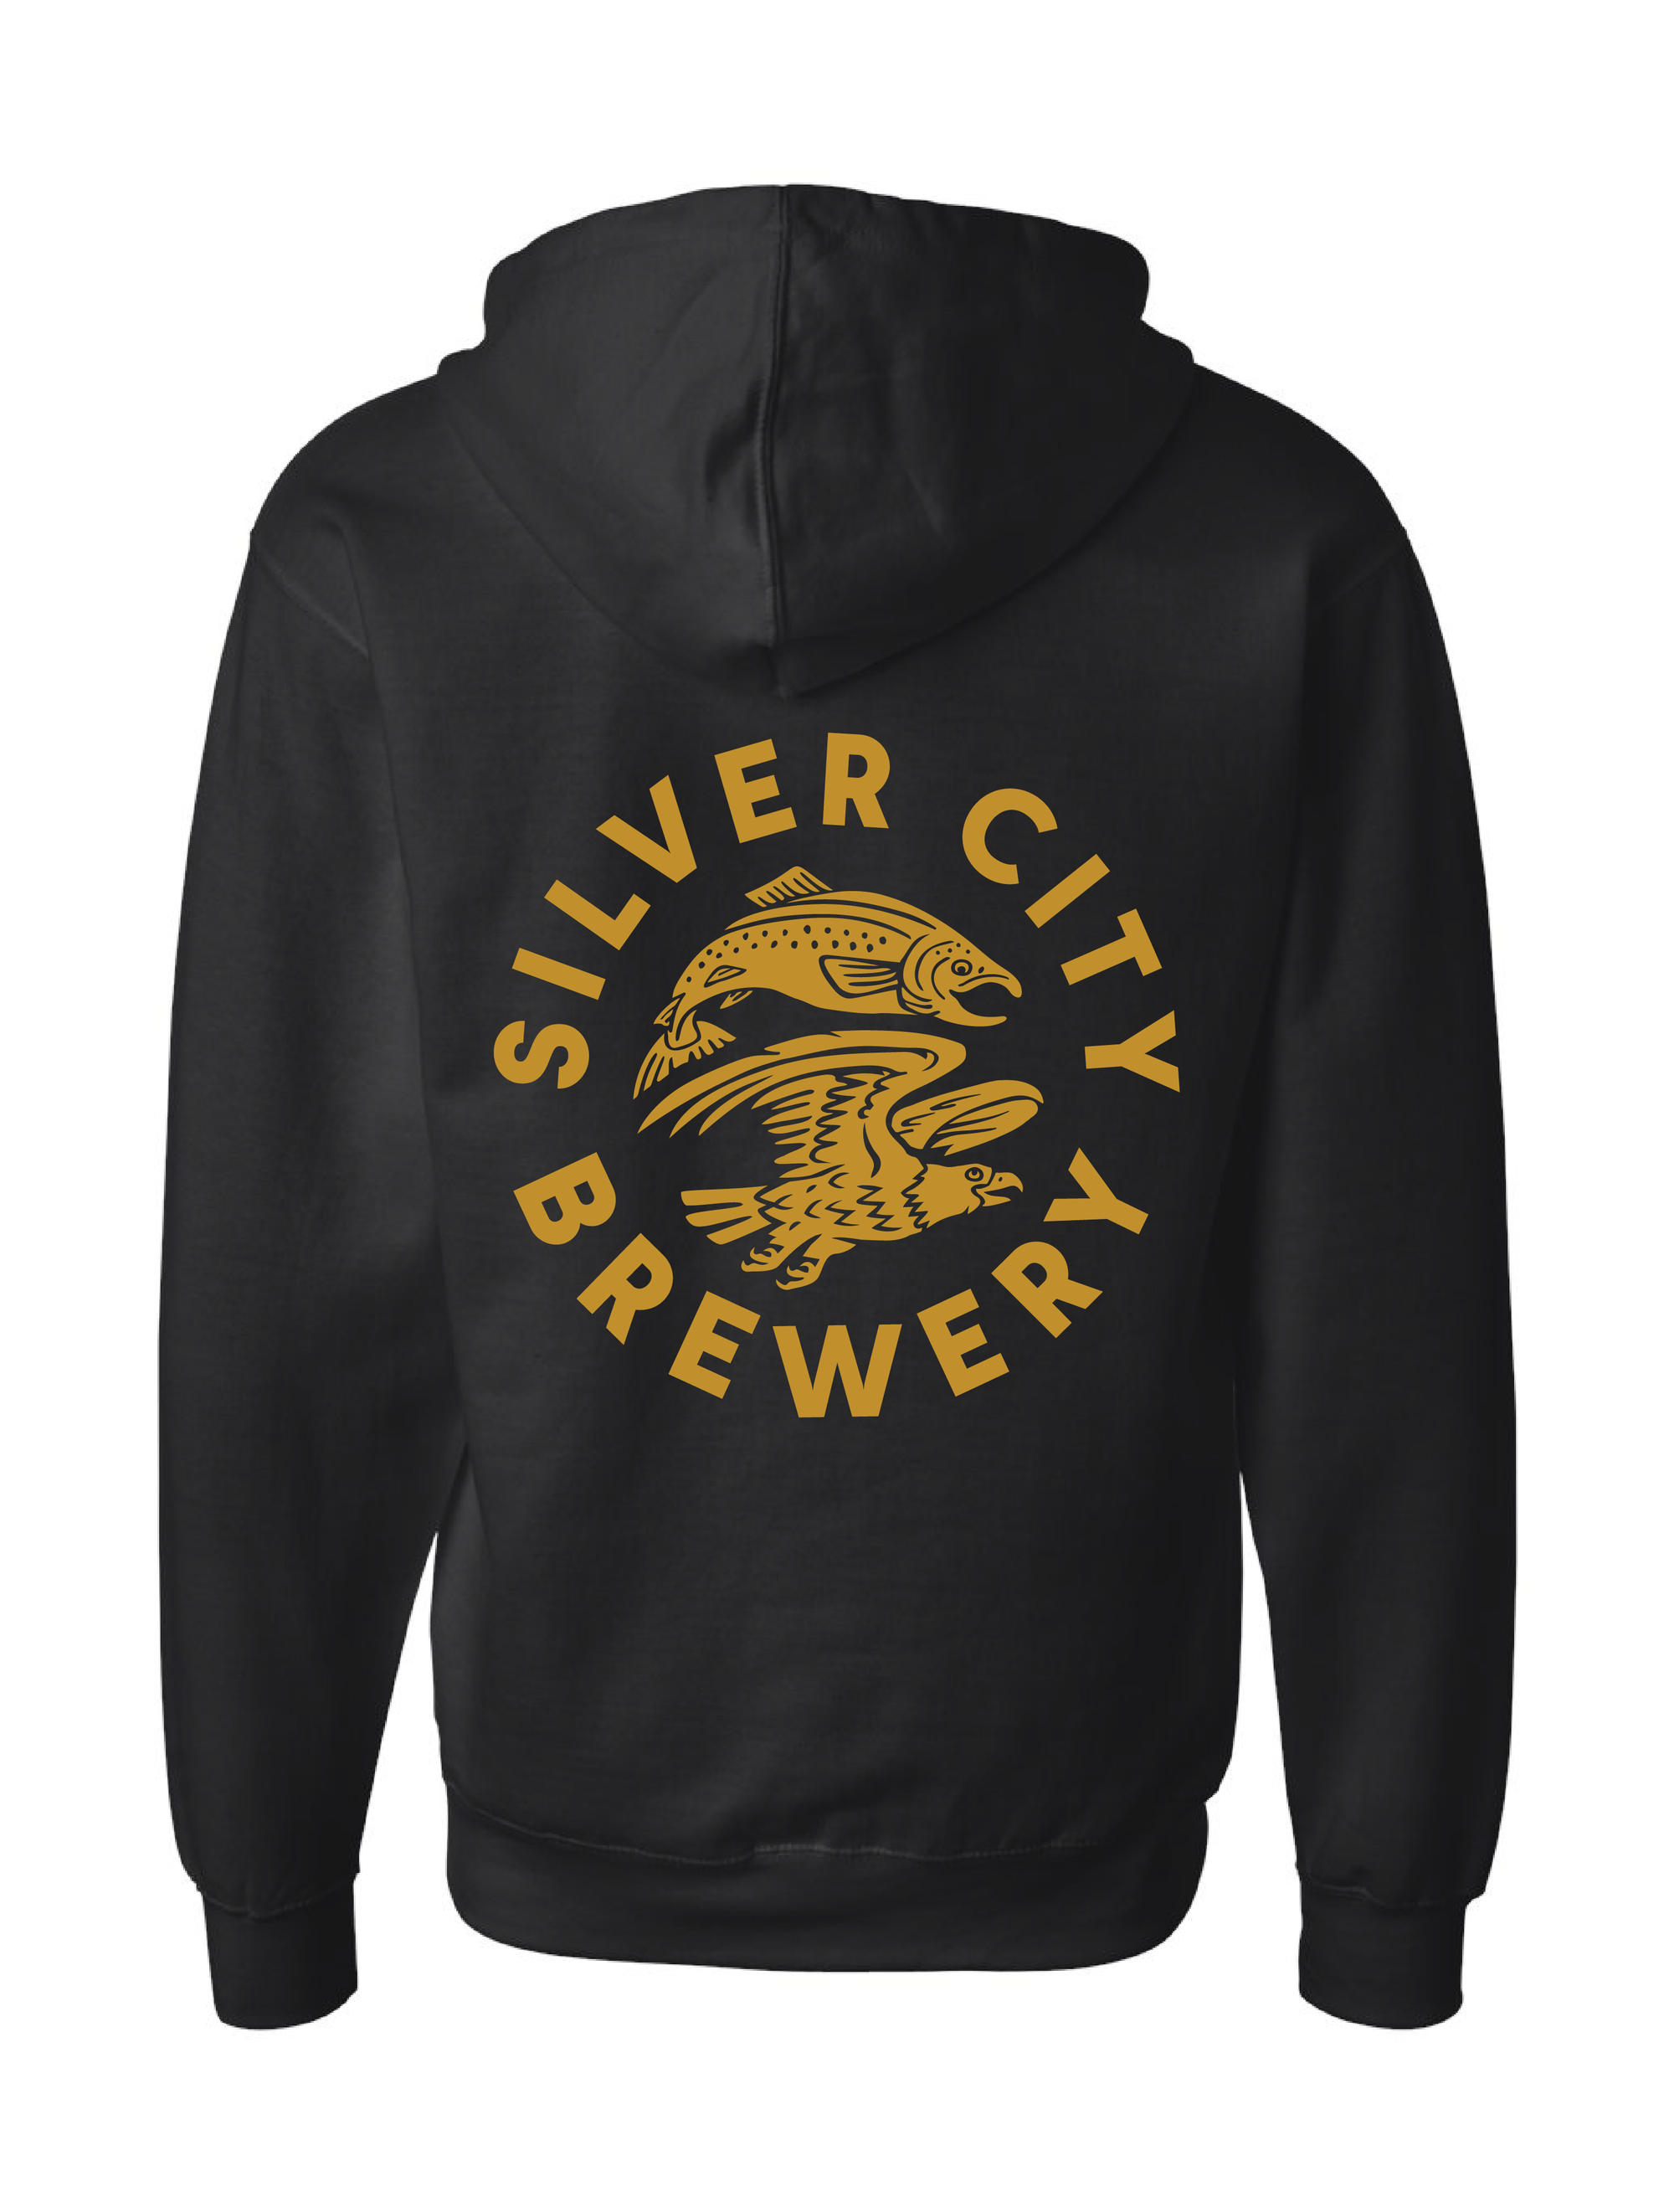 Silver City Brewery · Zip Up Hoodie